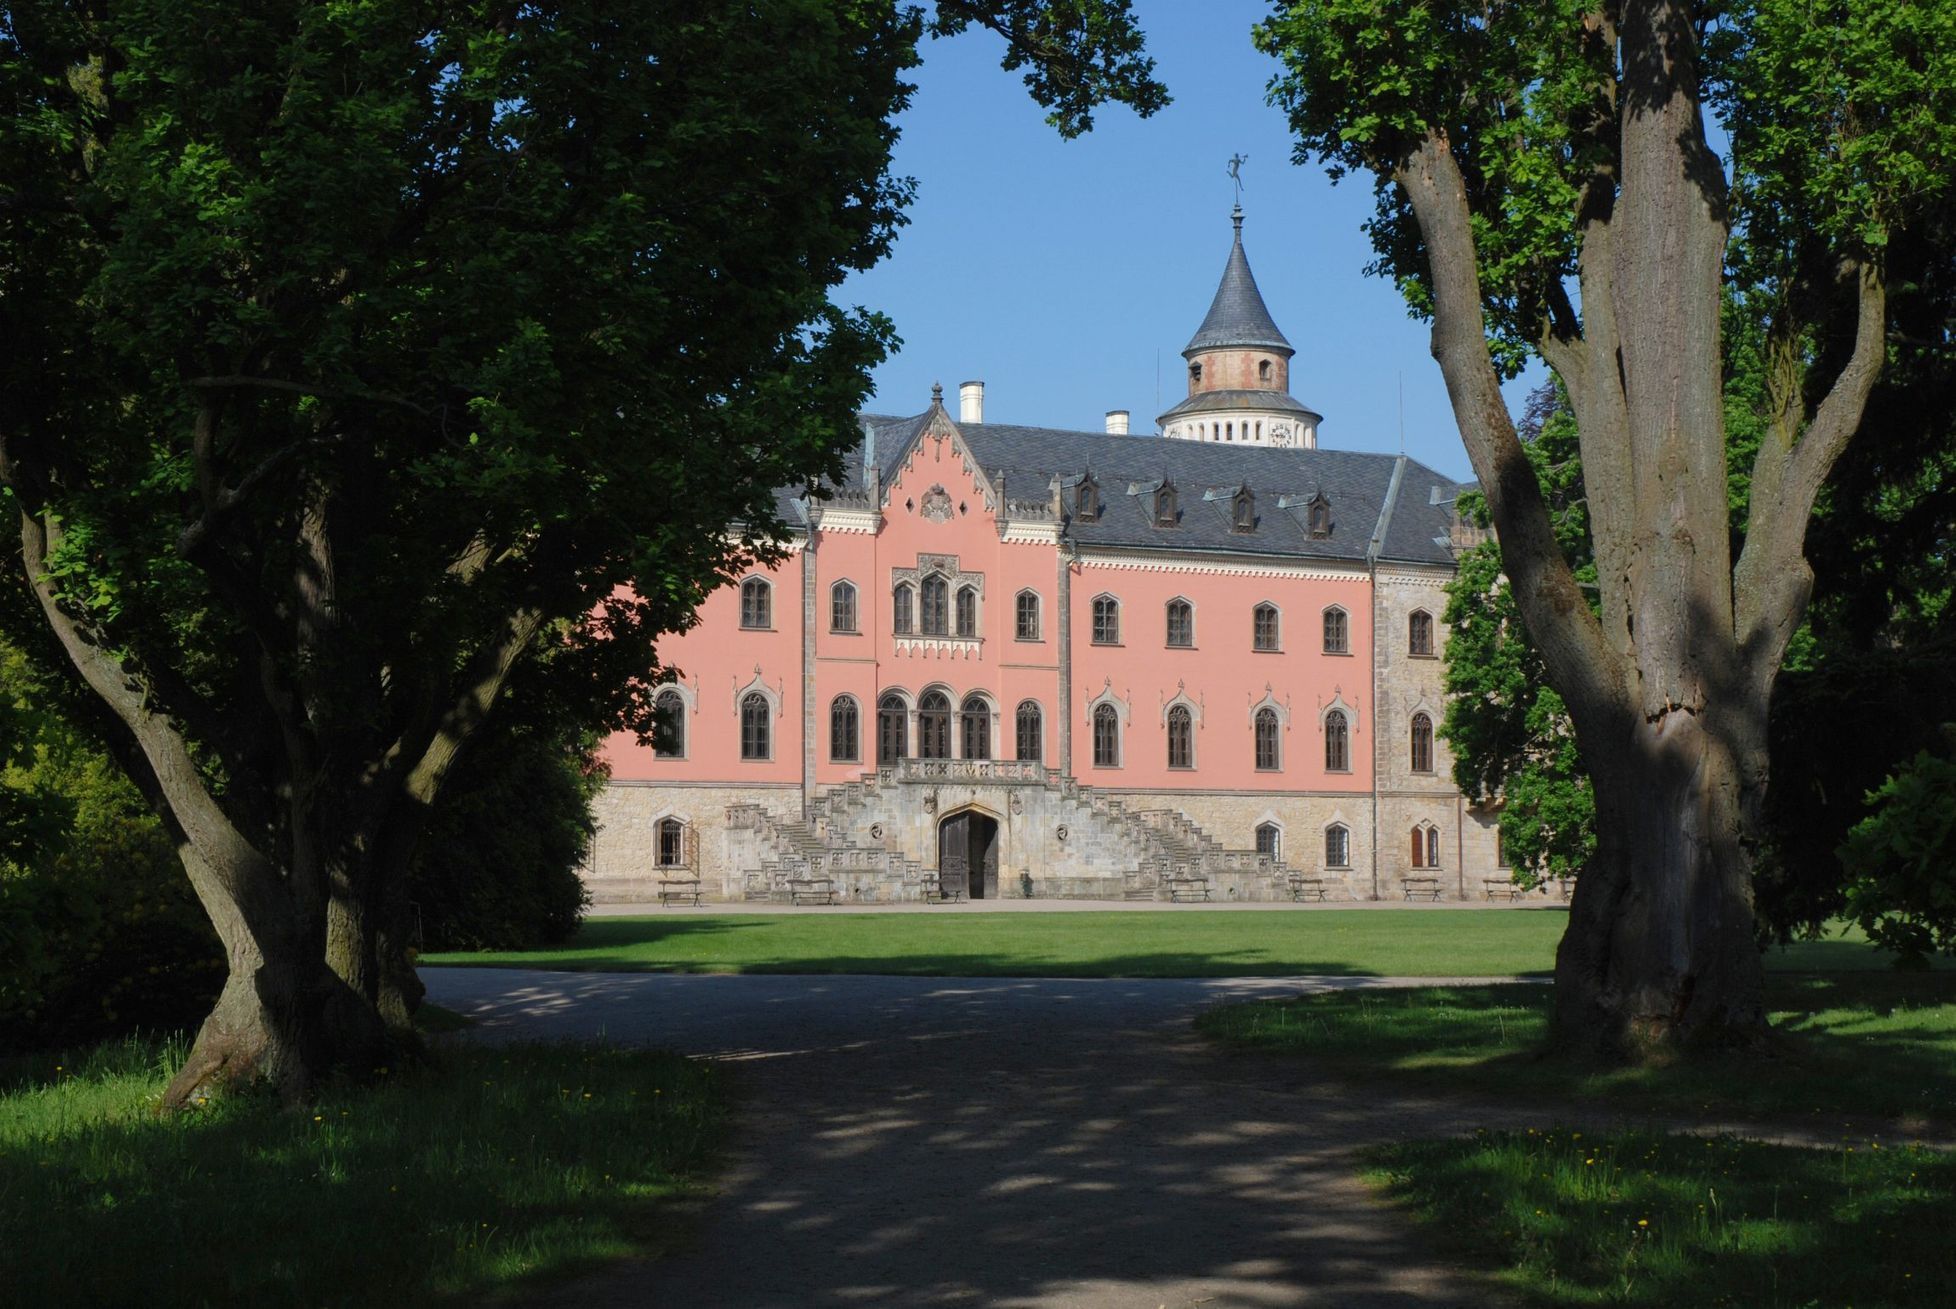 Státní zámek Sychrov